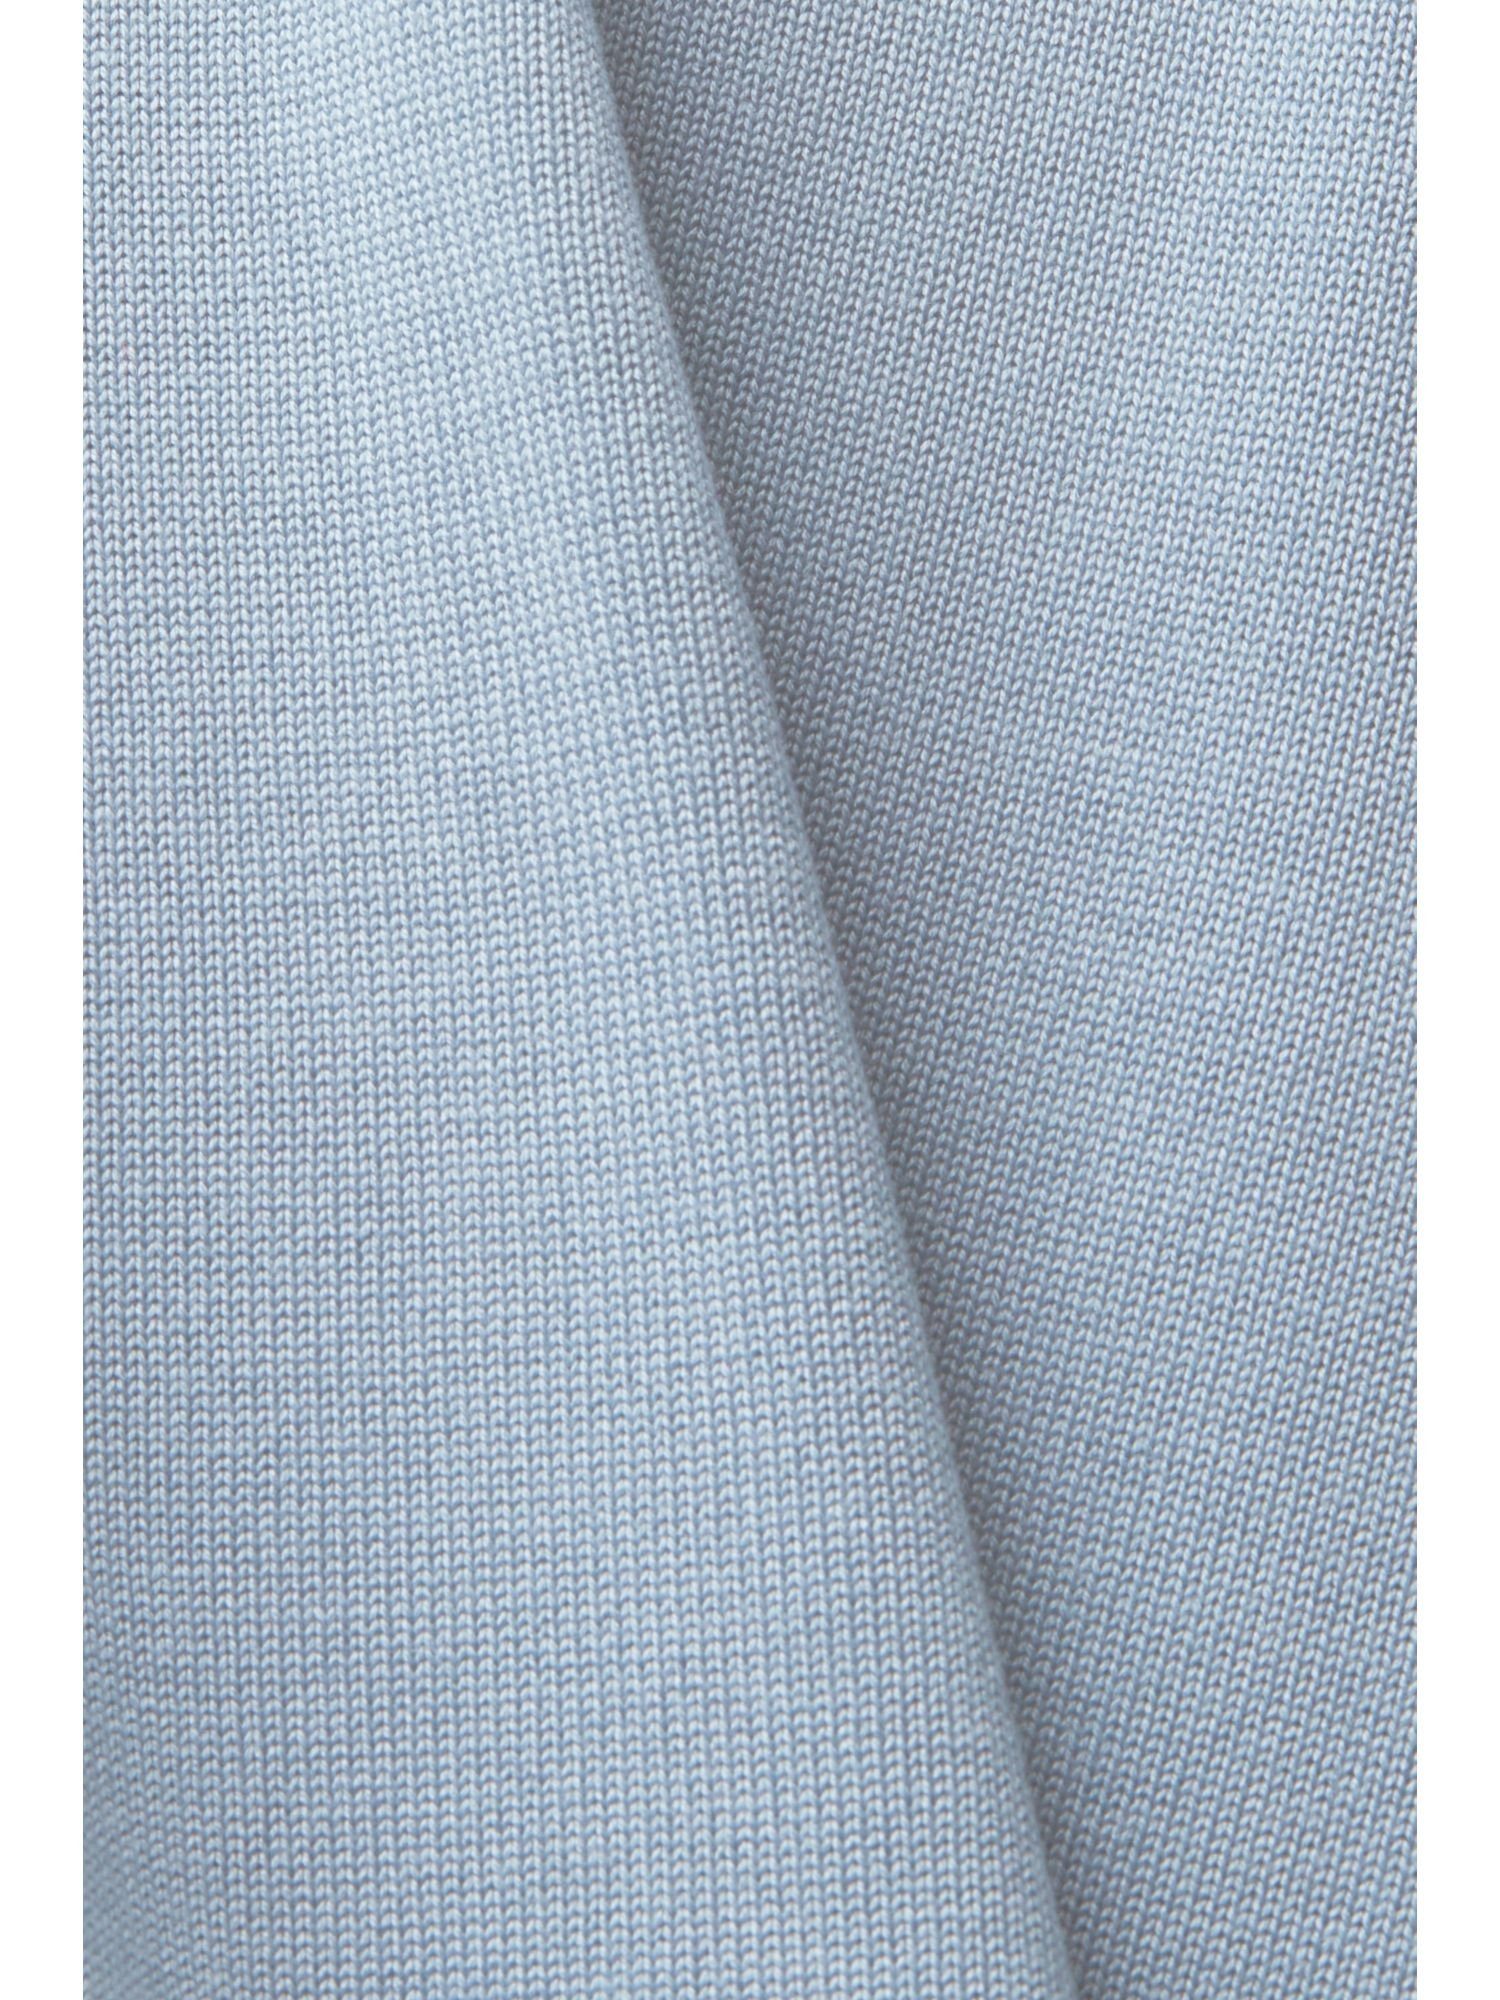 kurzen Collection (1-tlg) Esprit LIGHT LAVENDER mit Ärmeln Strickjacke Cardigan BLUE